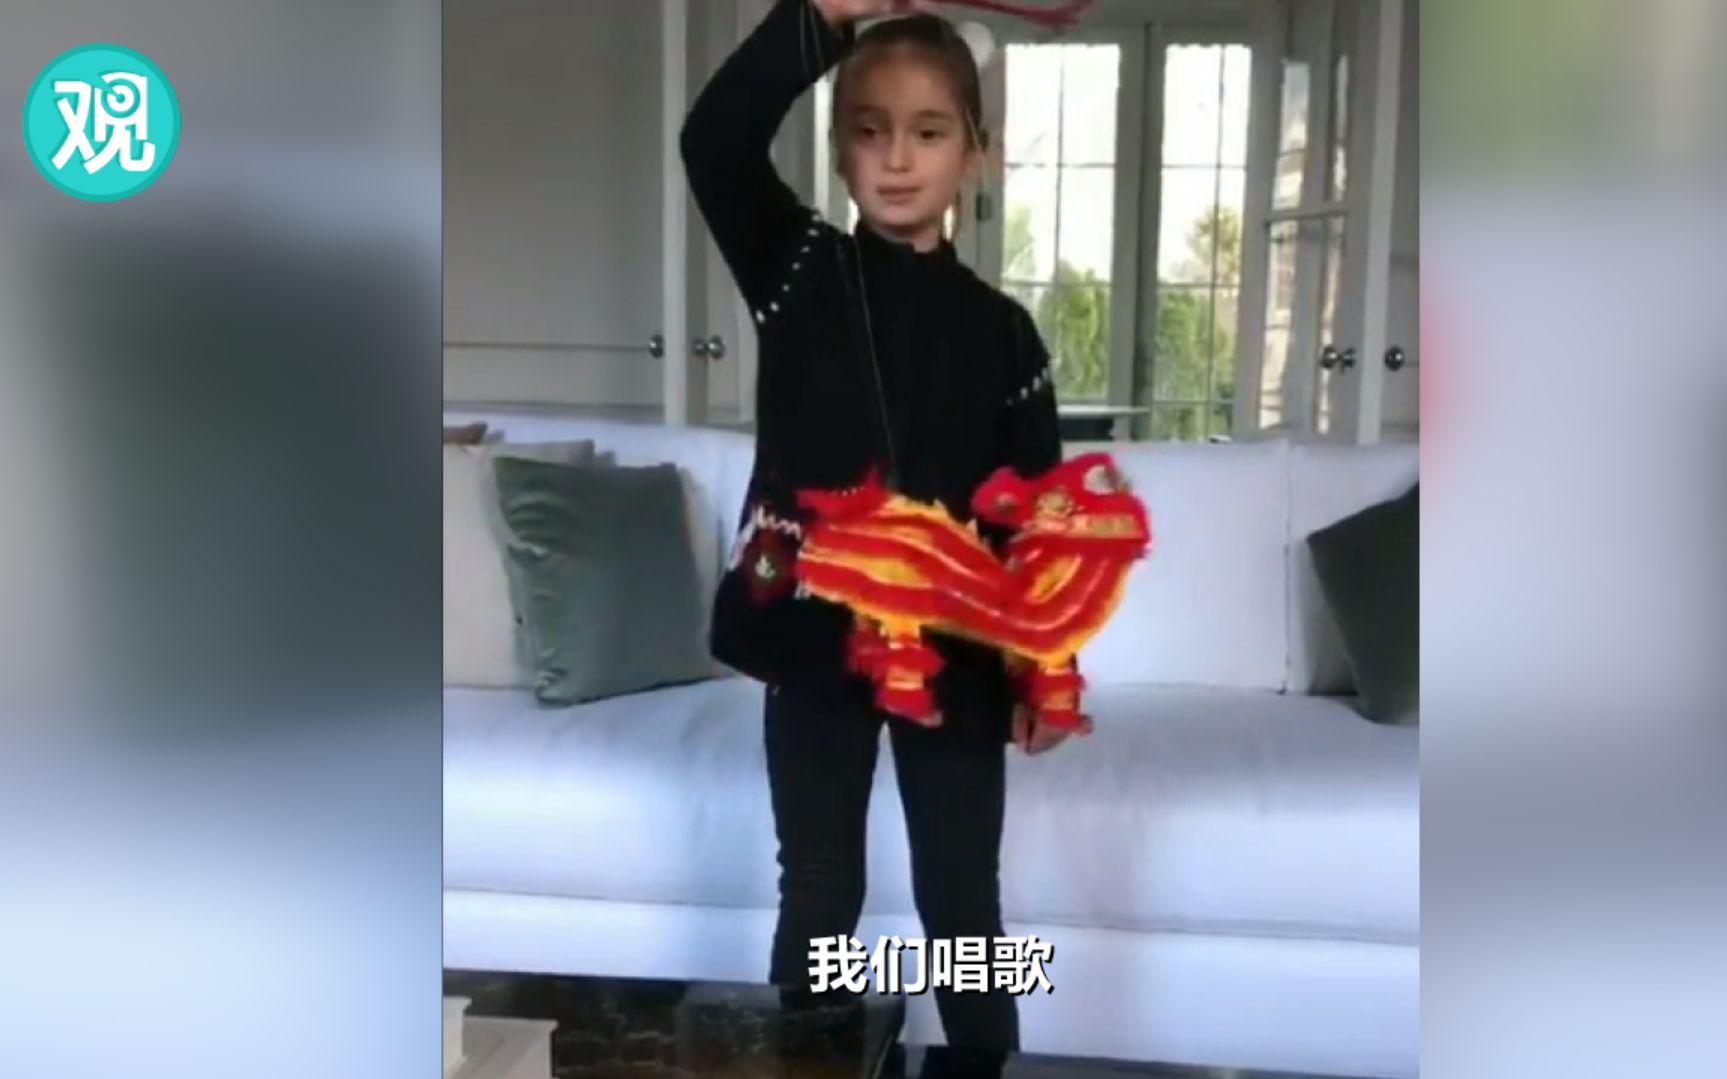 特朗普外孙女唱中文歌《新年好》拜年（视频） 伊万卡推特用中文写“新年快乐